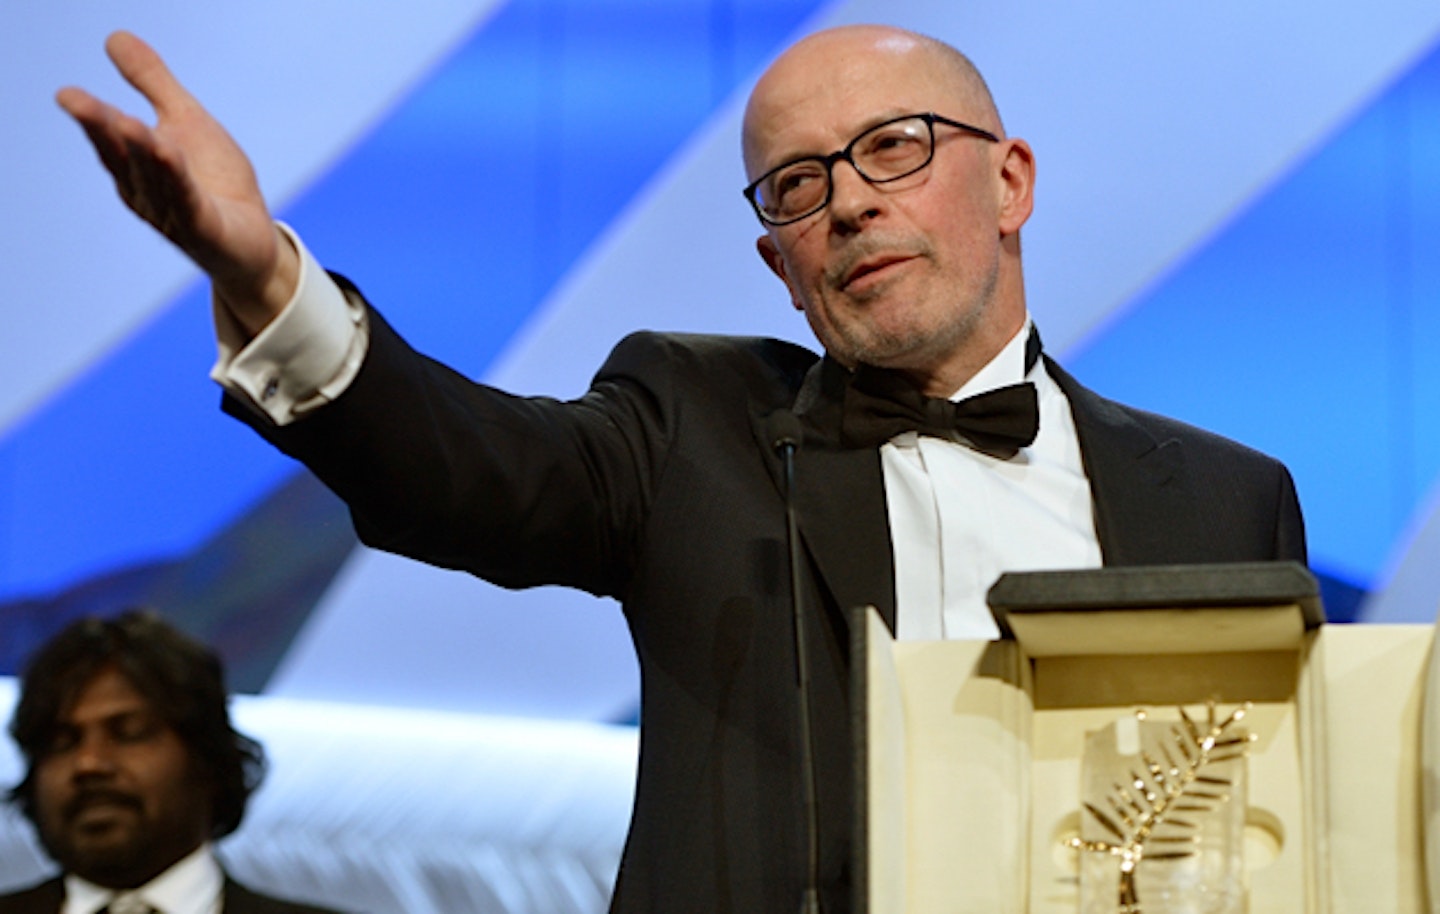 Jacques-Audiard-Wins-Palme-dOr-Cannes-2015